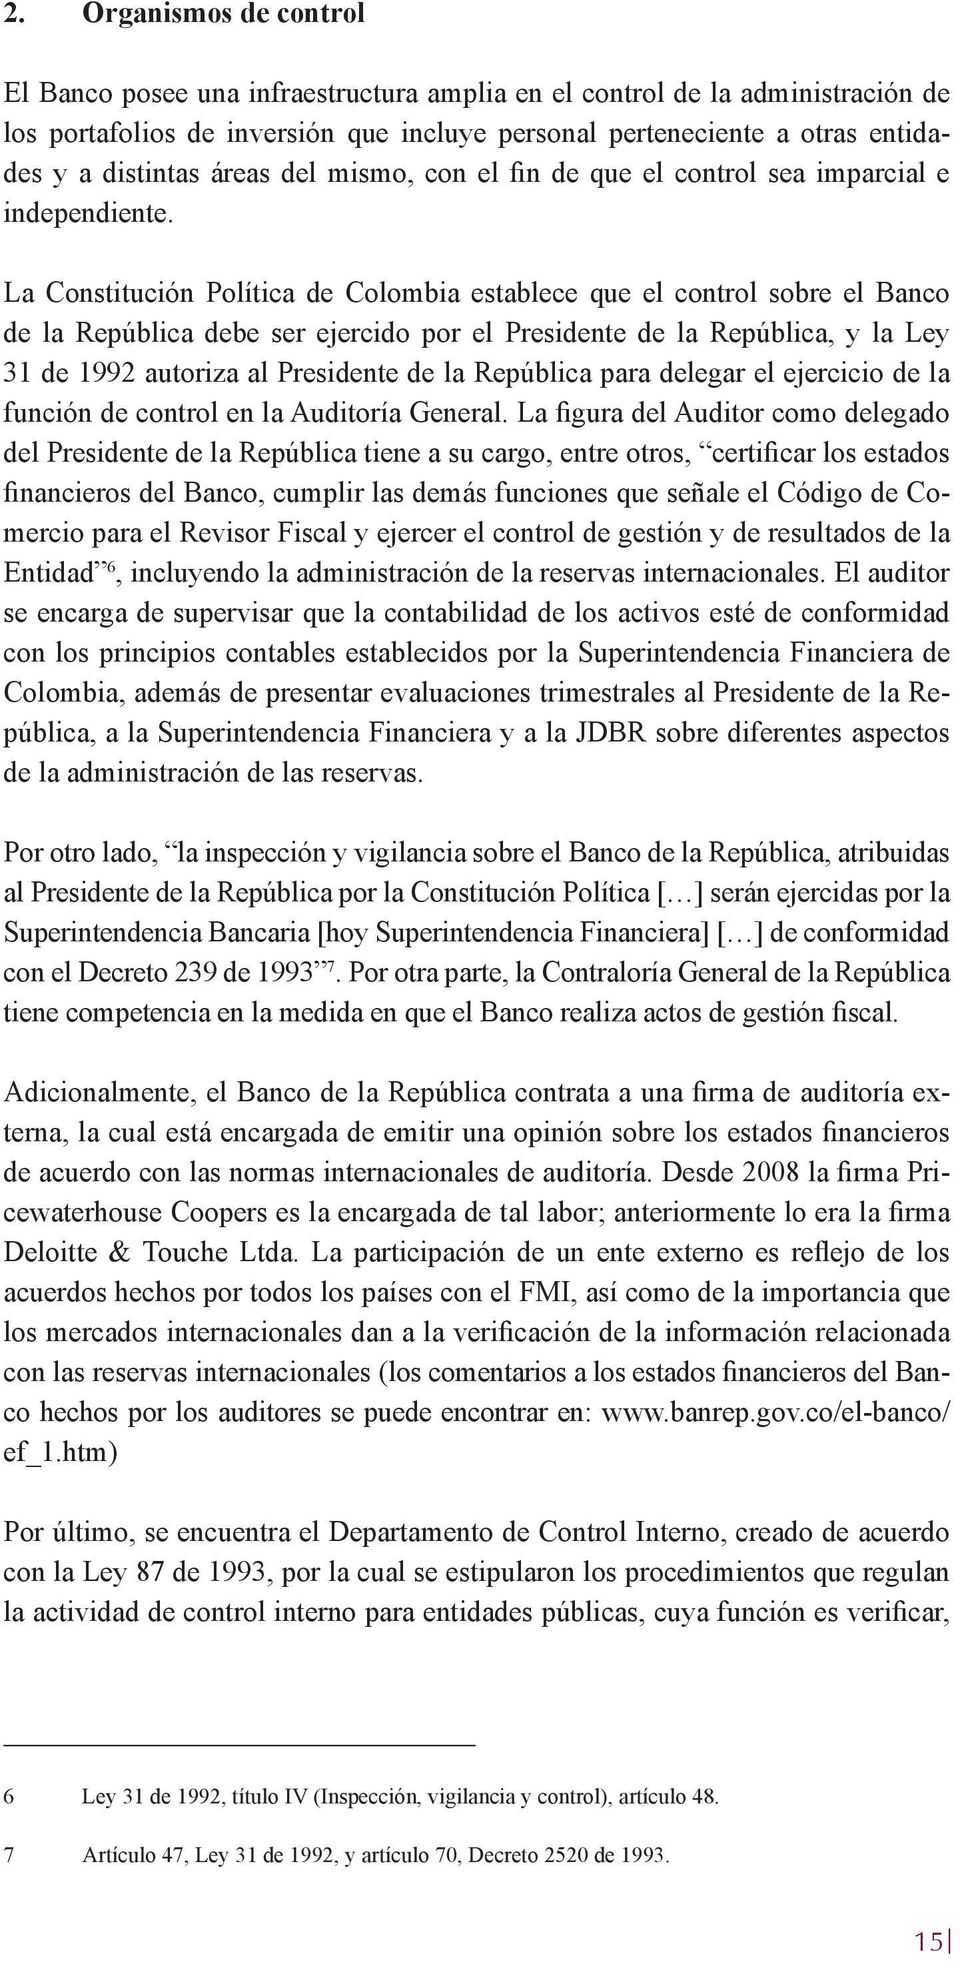 La Constitución Política de Colombia establece que el control sobre el Banco de la República debe ser ejercido por el Presidente de la República, y la Ley 31 de 1992 autoriza al Presidente de la